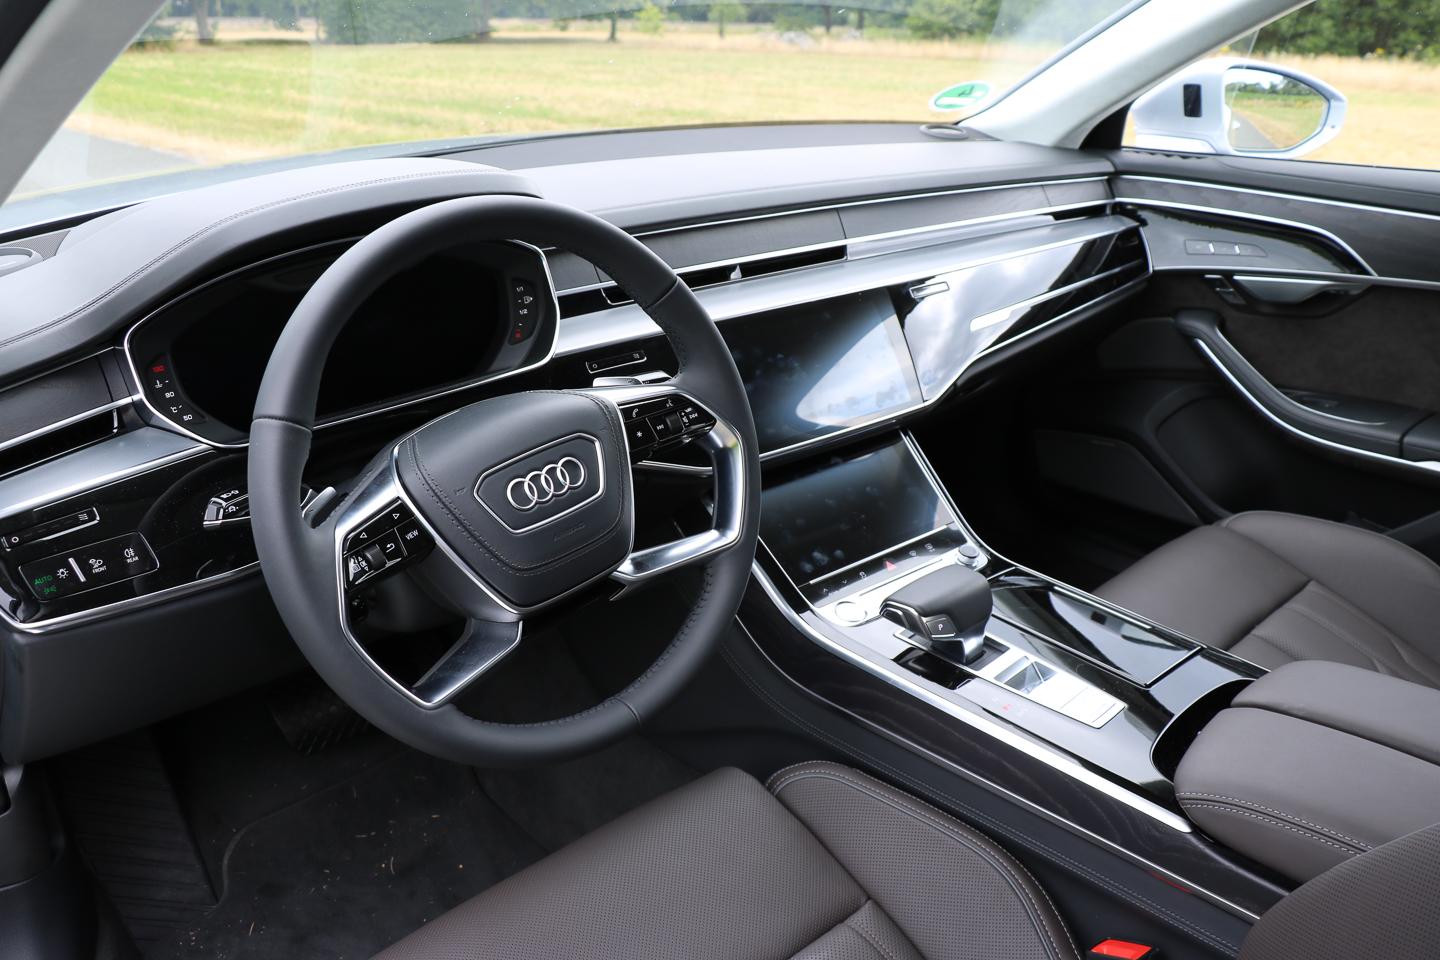 Audi A8 55 TFSI - luxuriöse Reiselimousine!